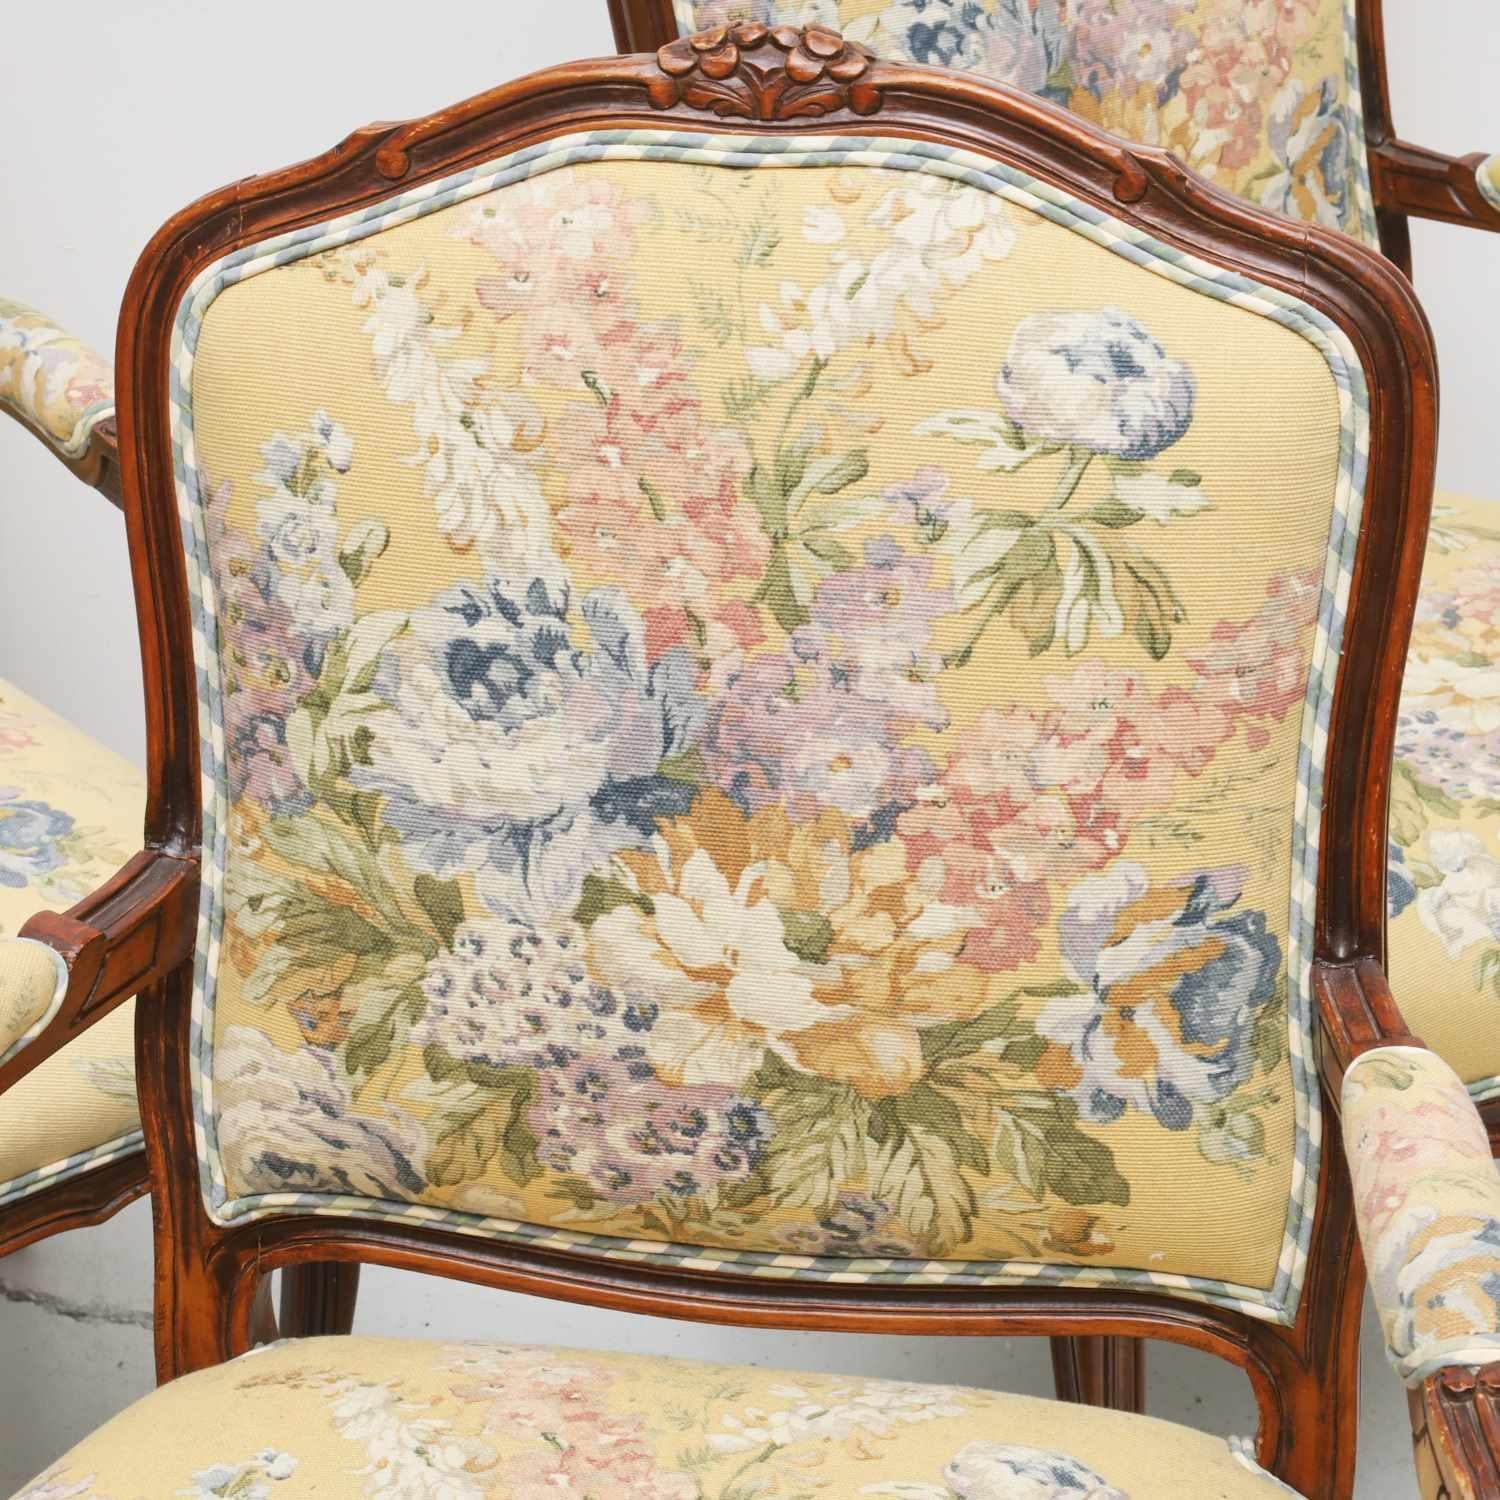 Fin du 20e s., un ensemble de quatre fauteuils de style Louis XV en tapisserie personnalisée de style tapisserie florale avec des dossiers et des passepoils en vichy bleu, vert pâle et blanc, non marqués.

Dimensions :
40 